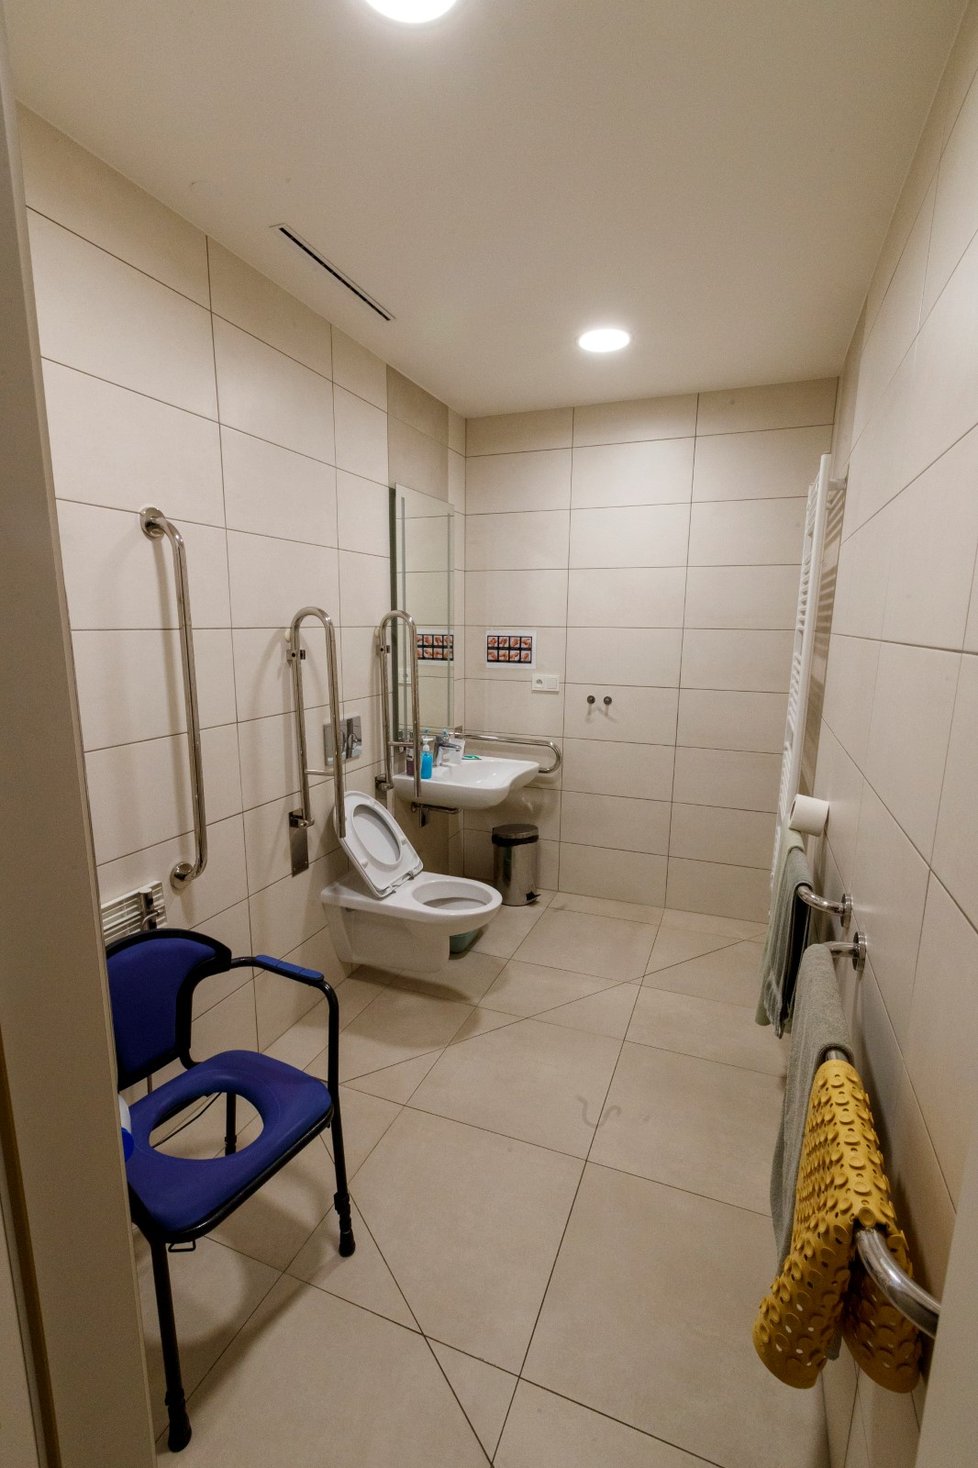 Prostory Domova Sulická: Toaleta uzpůsobená potřebám klientů